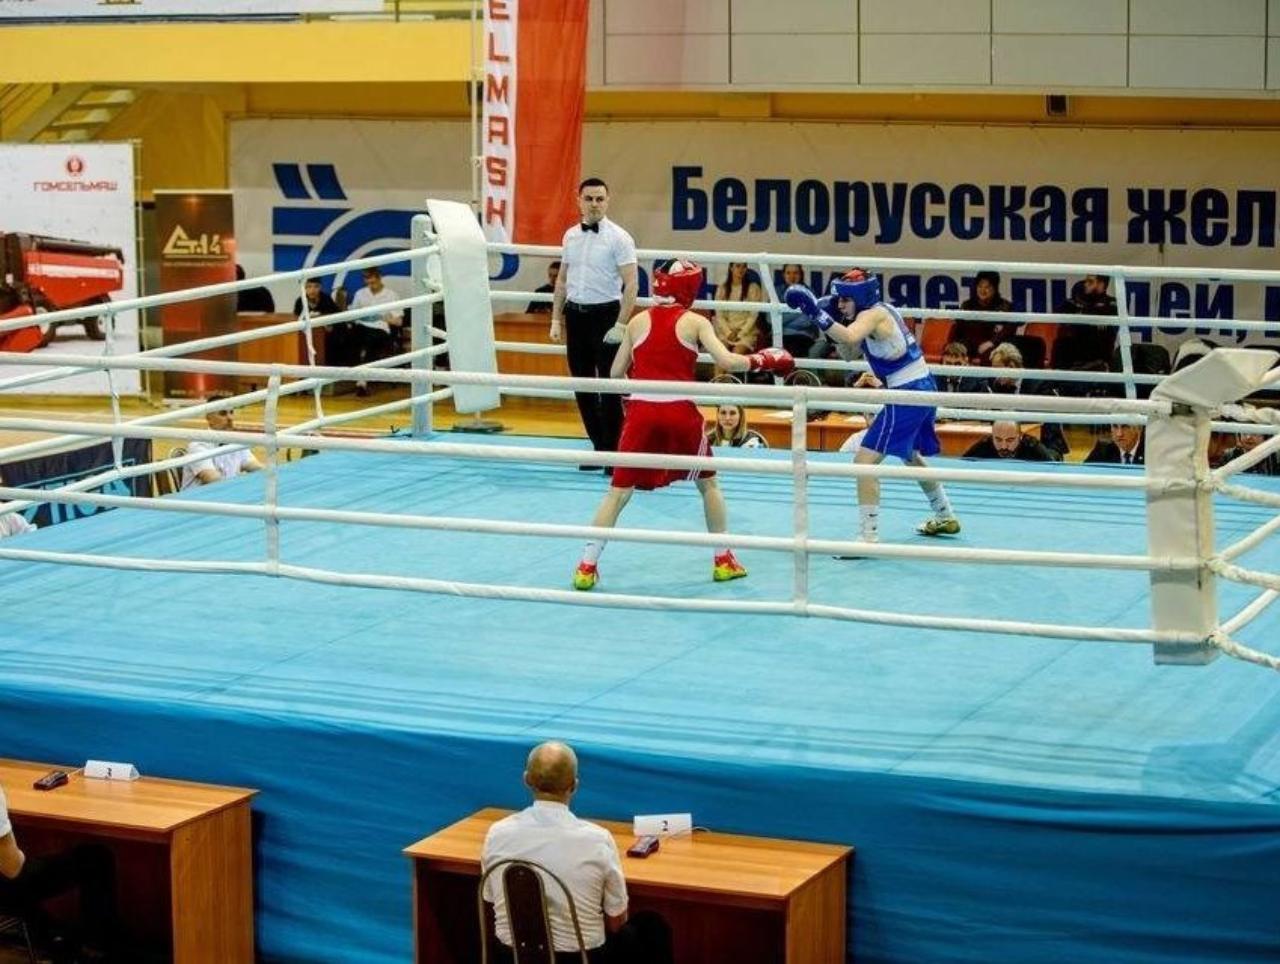  Три курских боксёра вышли в полуфинал международных соревнований в Беларуси